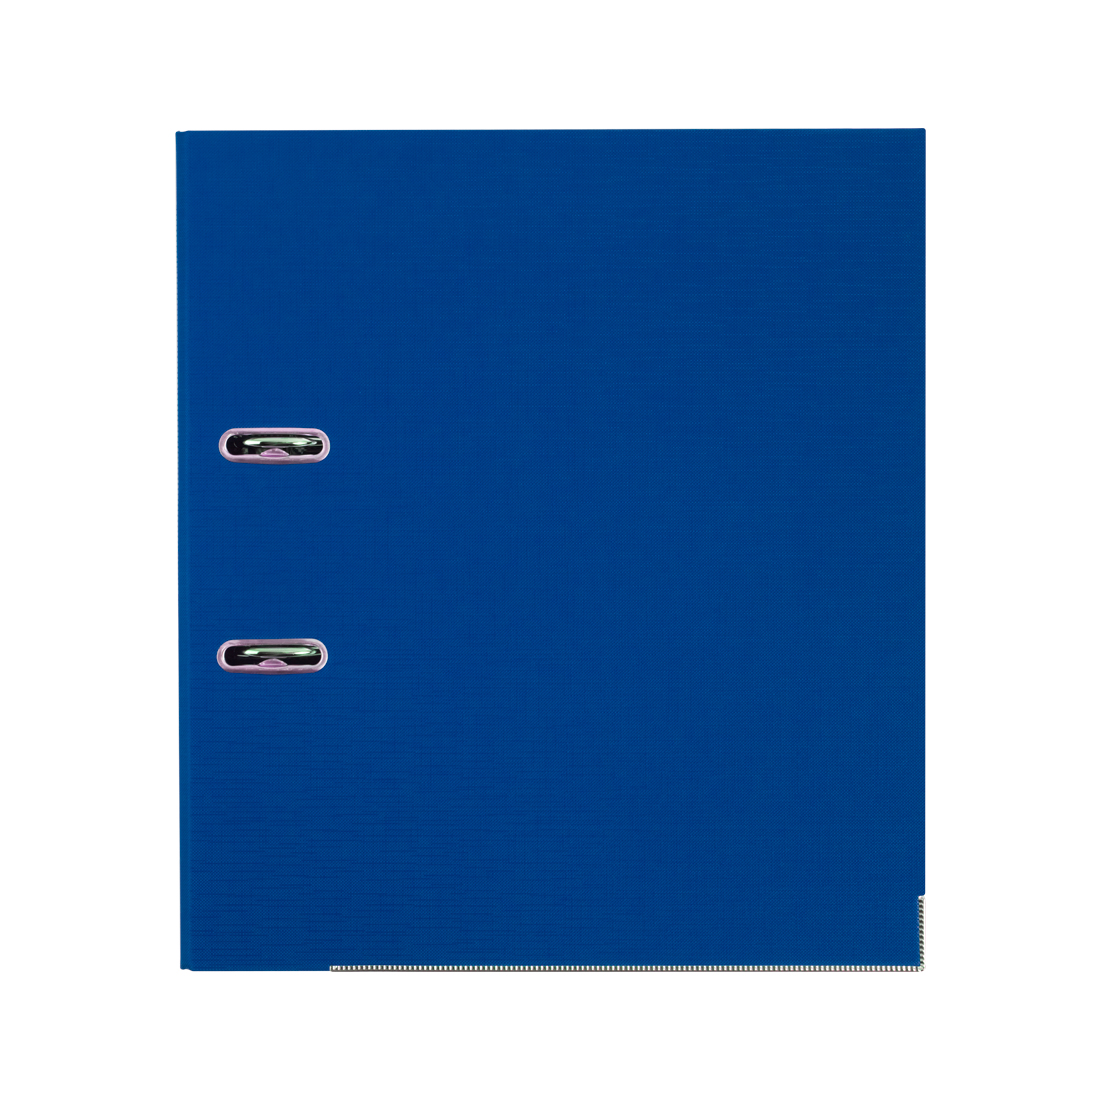 Папка-регистратор Deluxe с арочным механизмом, Office 2-BE21 (2" BLUE), А4, 50 мм, синий